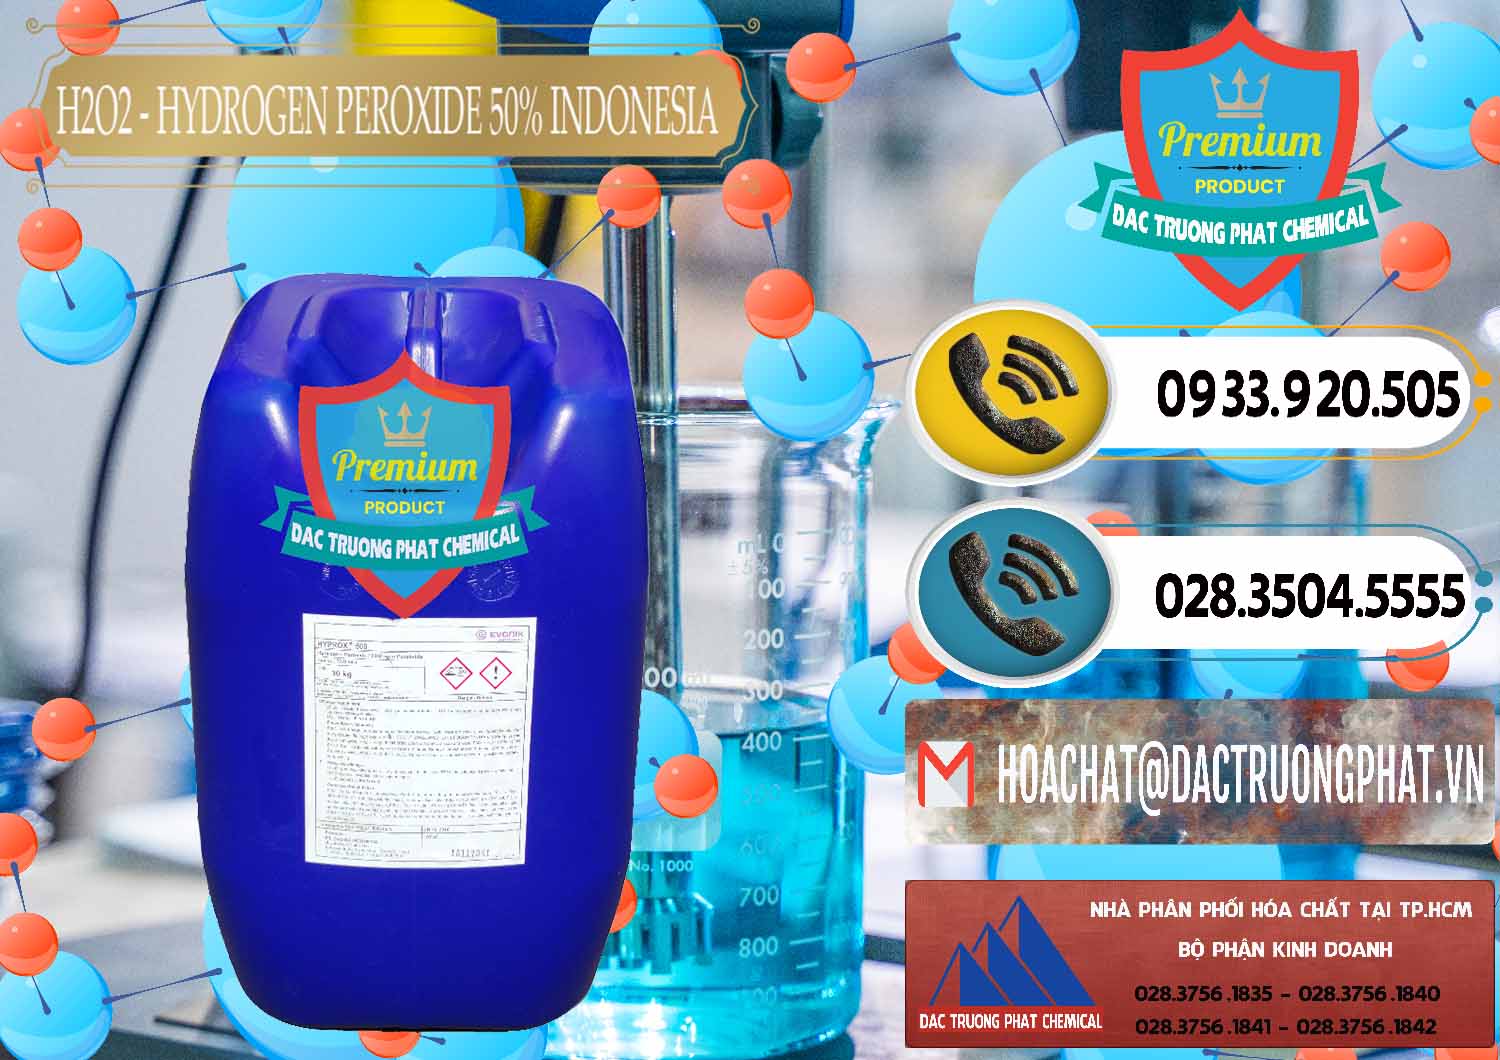 Nơi chuyên cung ứng và bán H2O2 - Hydrogen Peroxide 50% Evonik Indonesia - 0070 - Phân phối ( cung cấp ) hóa chất tại TP.HCM - hoachatdetnhuom.vn